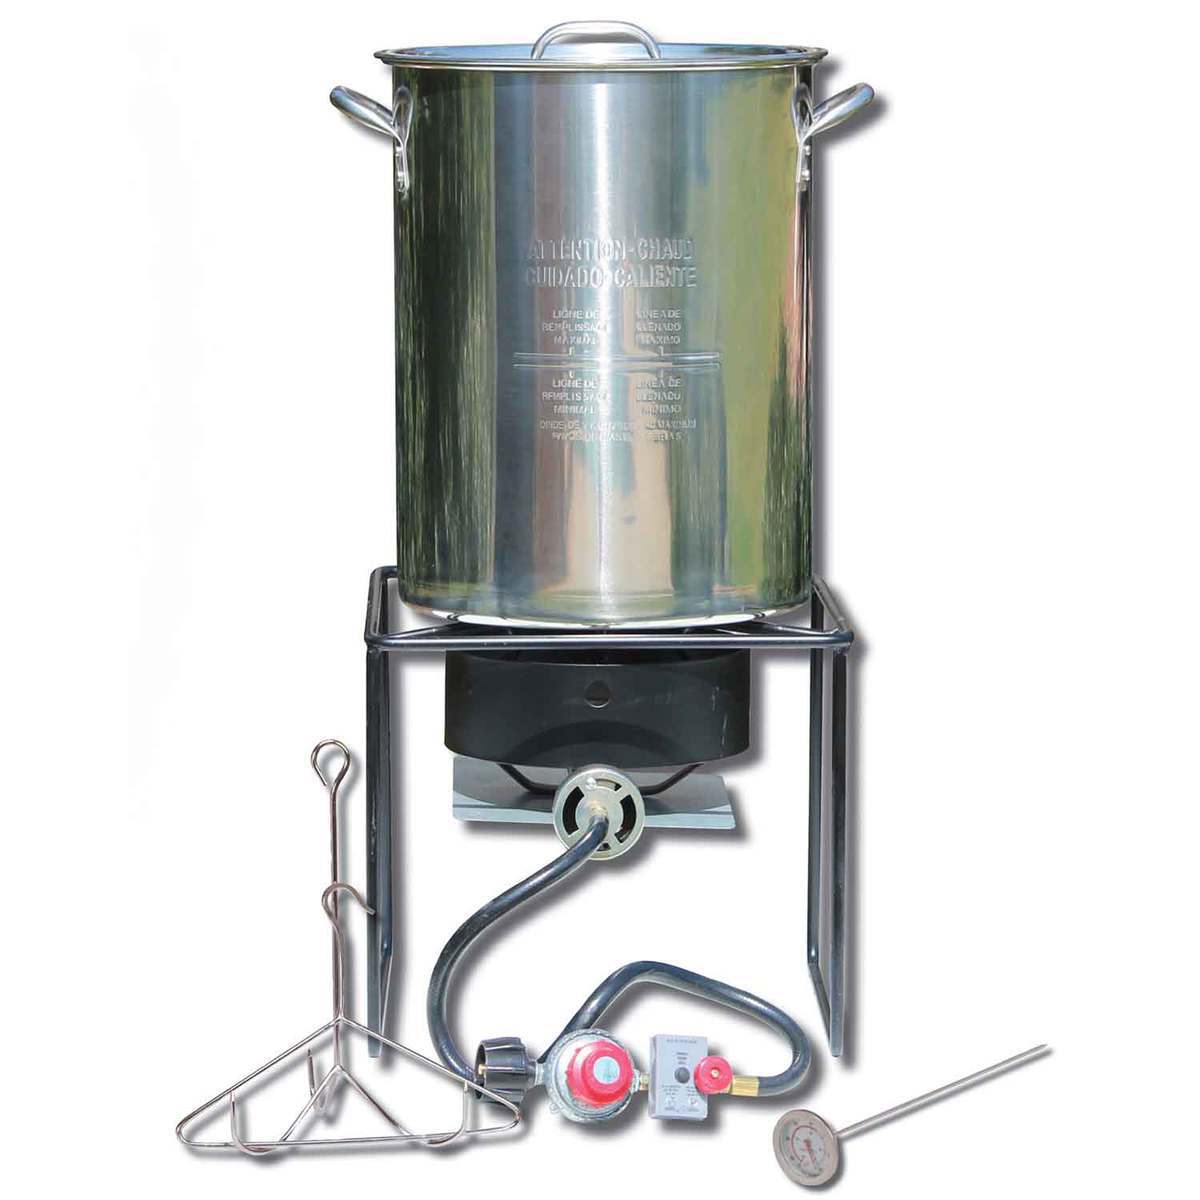 https://www.sportsmans.com/medias/king-kooker-portable-turkey-fryer-1-burner-cooker-package-steel-1545643-1.jpg?context=bWFzdGVyfGltYWdlc3w3MDkyNHxpbWFnZS9qcGVnfGltYWdlcy9oMjgvaGM4Lzk1MDM0Mzc1MjA5MjYuanBnfDI2MzkzMjI1Y2RmNjM1YWI1NjBmNDAzOThjYmIzYmZmOWE4ZGQwMTg1MDE1NWQwM2M0MzAzODVhMzdiNzdhZjg